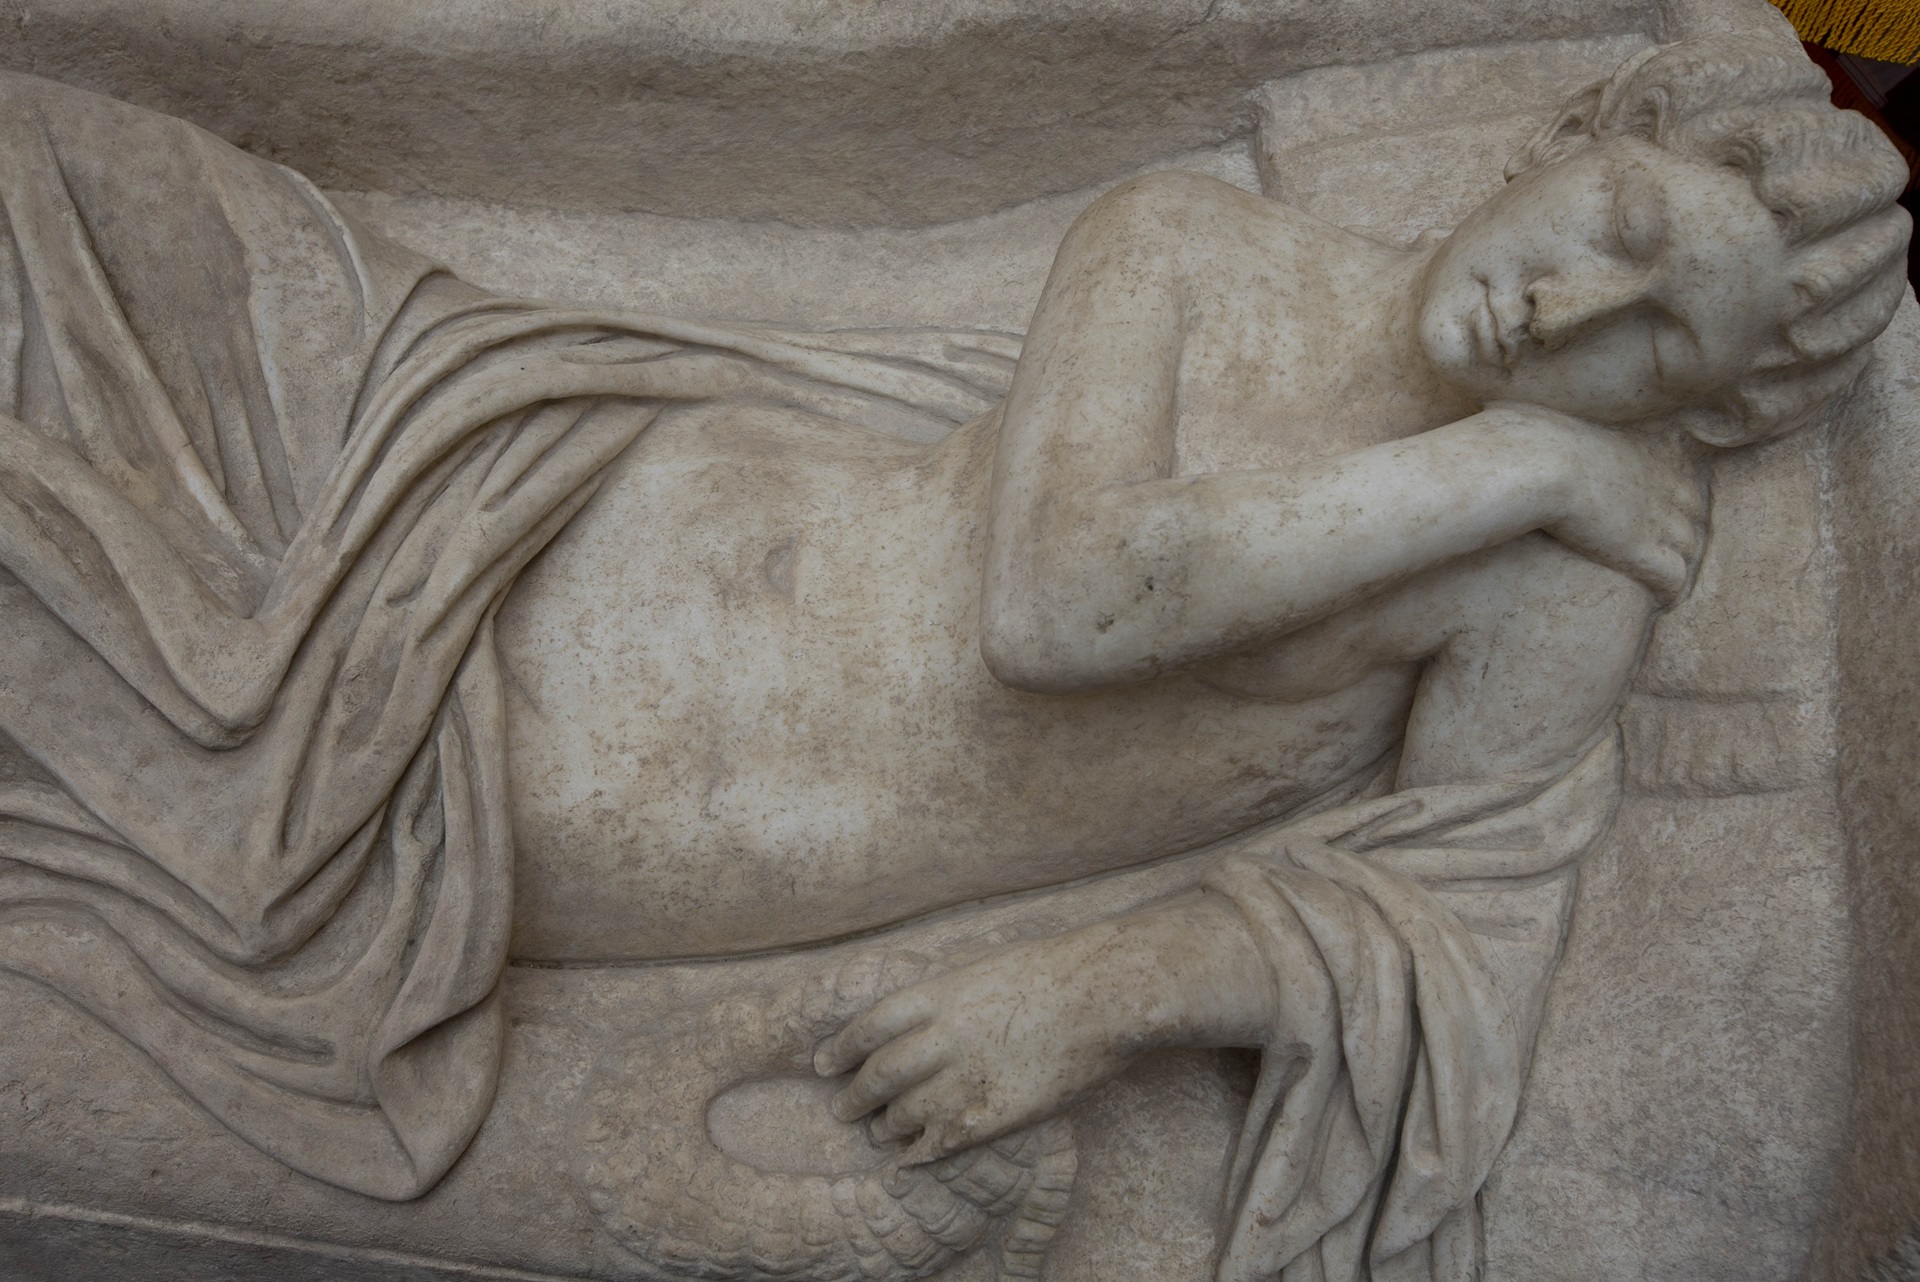 Παντοτινούς Κανιβαλισμούς: Η Σκοτεινή Πλευρά της Ελληνικής Μυθολογίας
